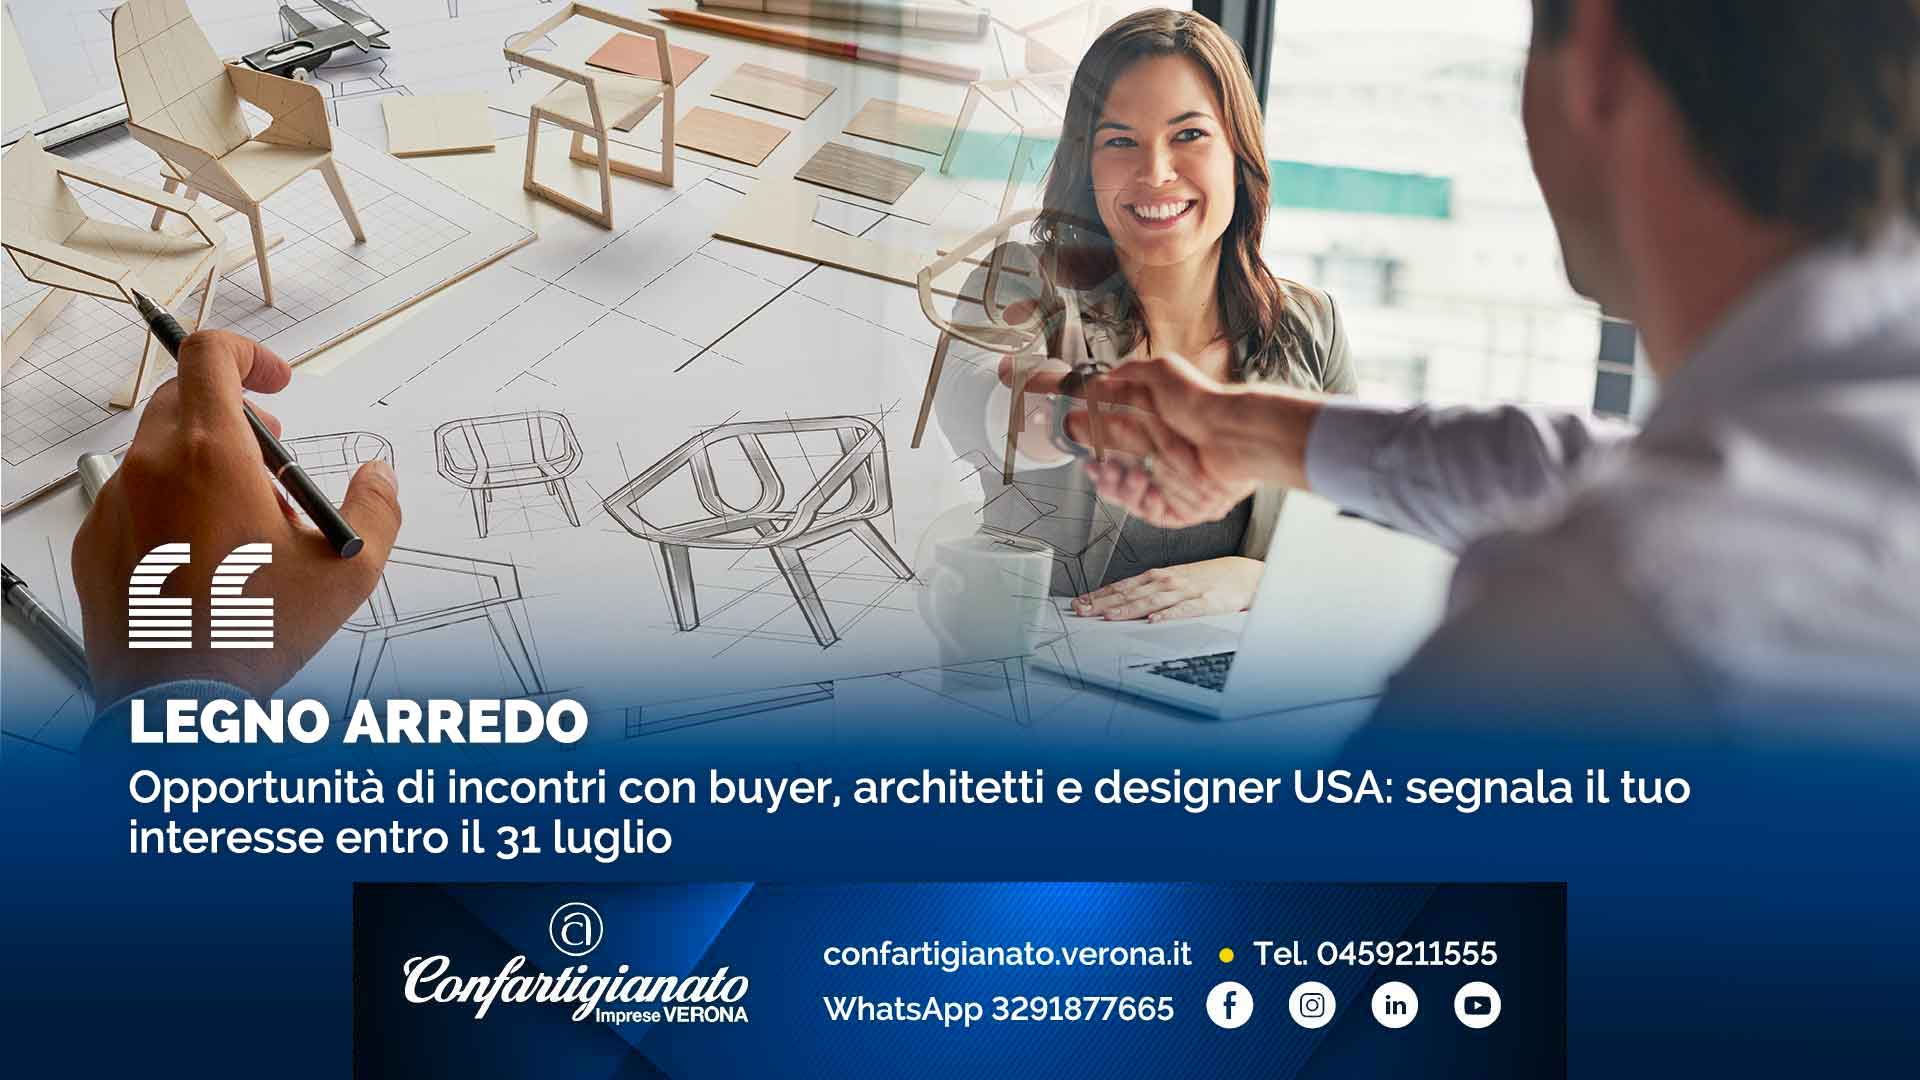 LEGNO ARREDO – Opportunità di incontri con buyer, architetti e designer USA: segnala il tuo interesse entro il 31 luglio